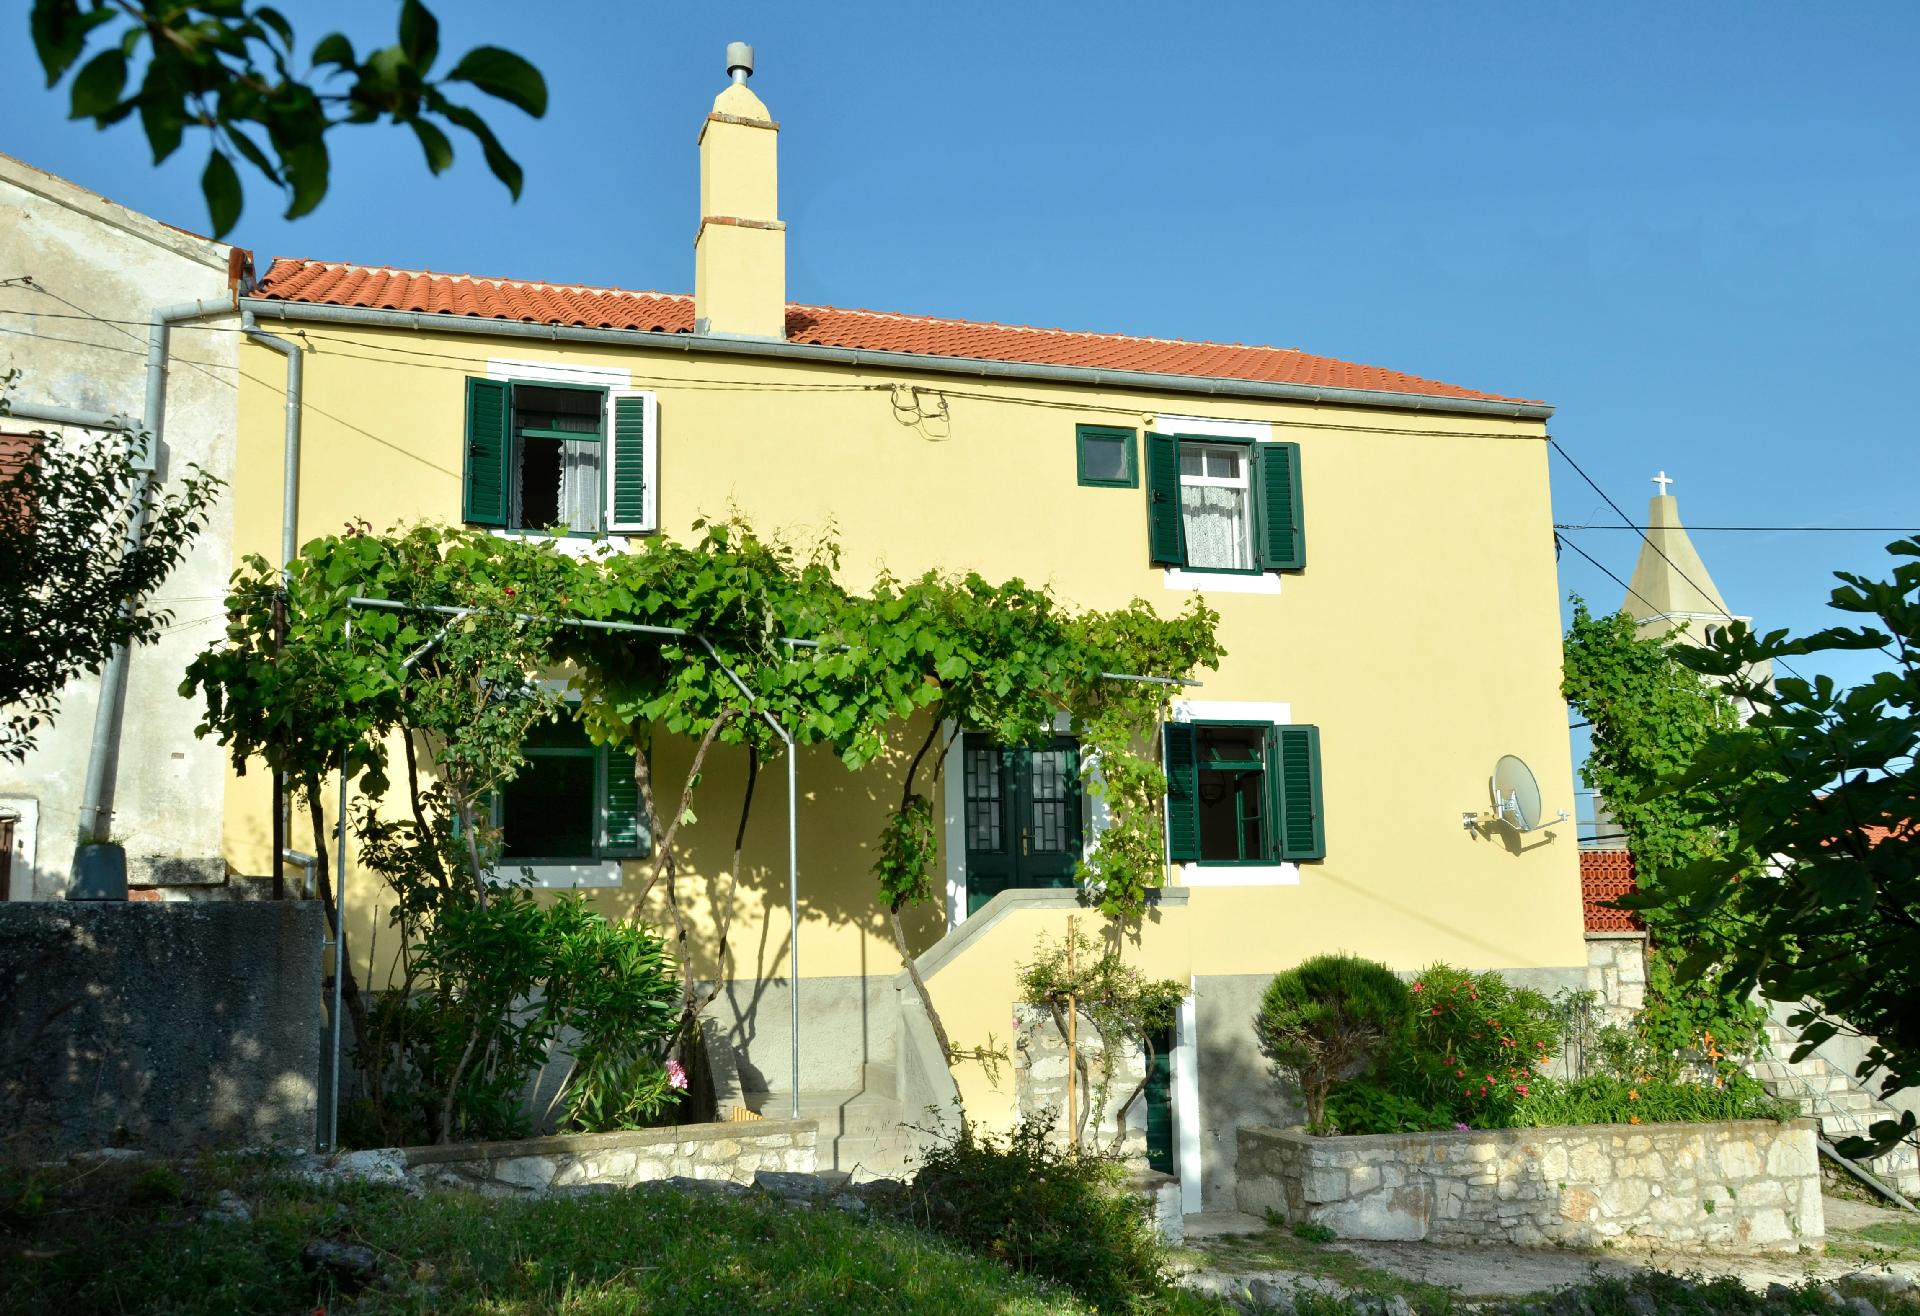 Insel Cres, Stivan, liebevoll restauriertes Dorfha Ferienhaus in Europa